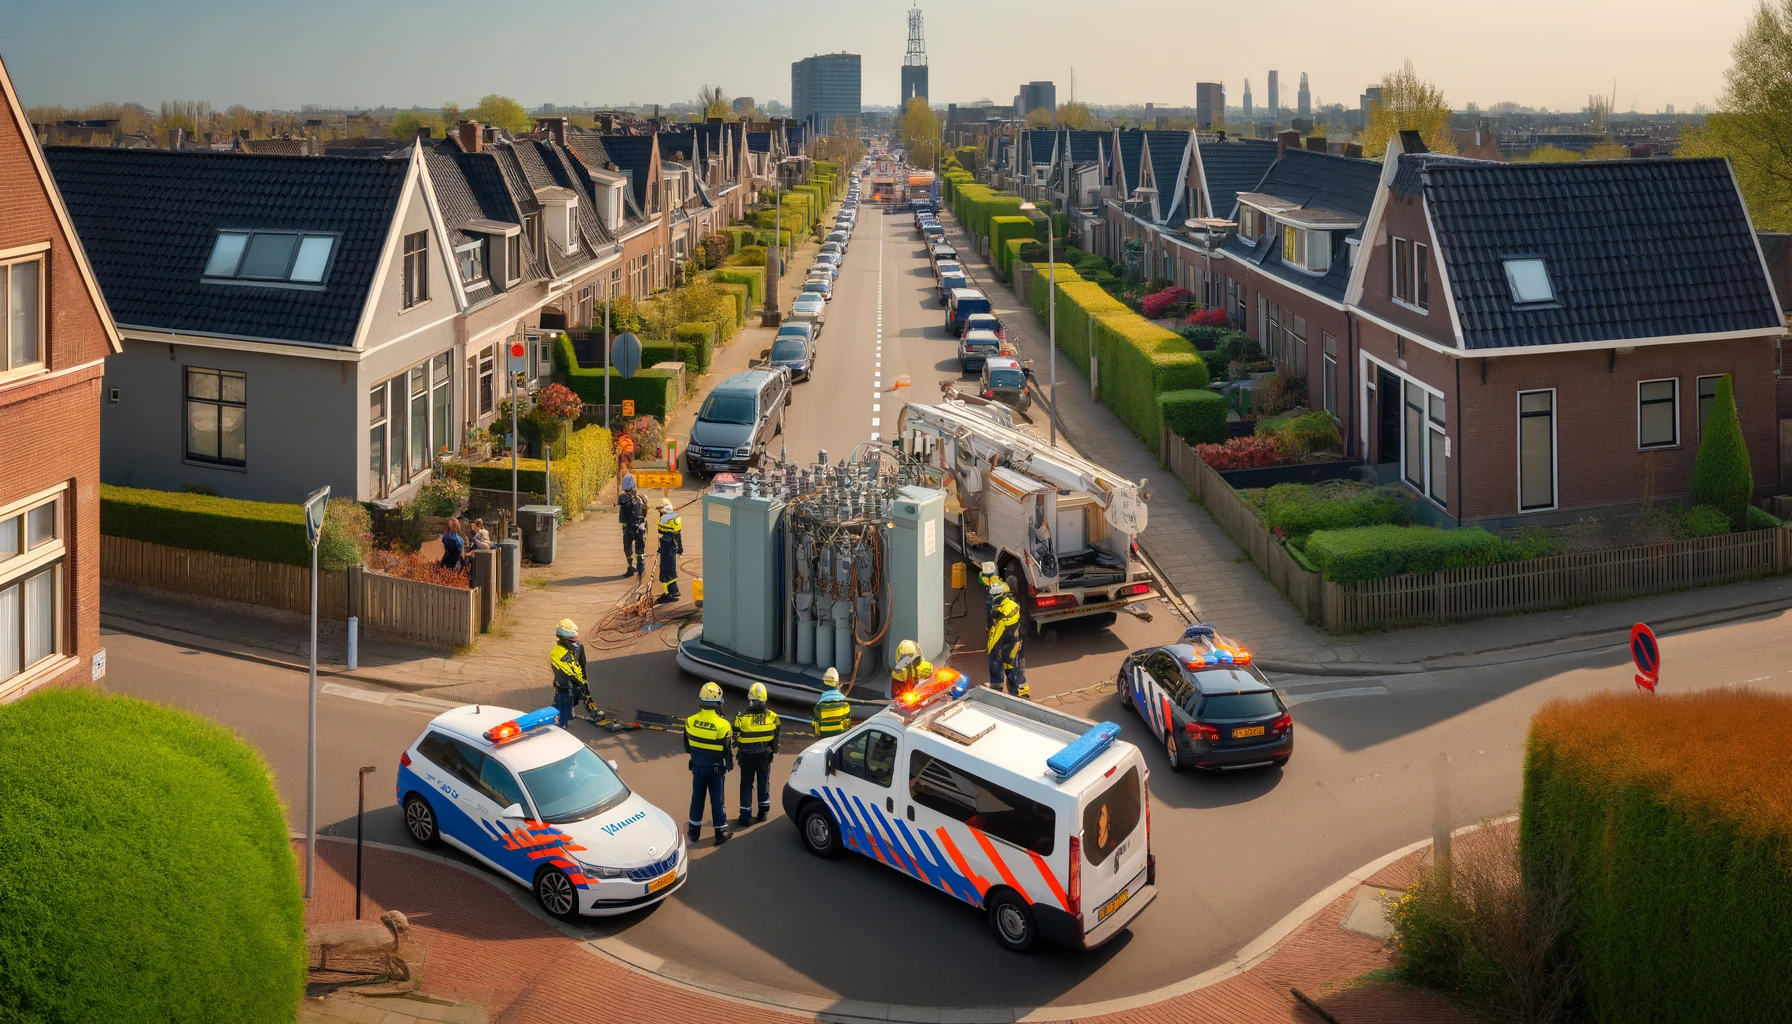 Bir Şehri Karanlıkta Bırakan Hırsızlık: Schiedam'da Bakır Kablolar Çalındı, Yüzlerce Ev Elektriksiz Kaldı